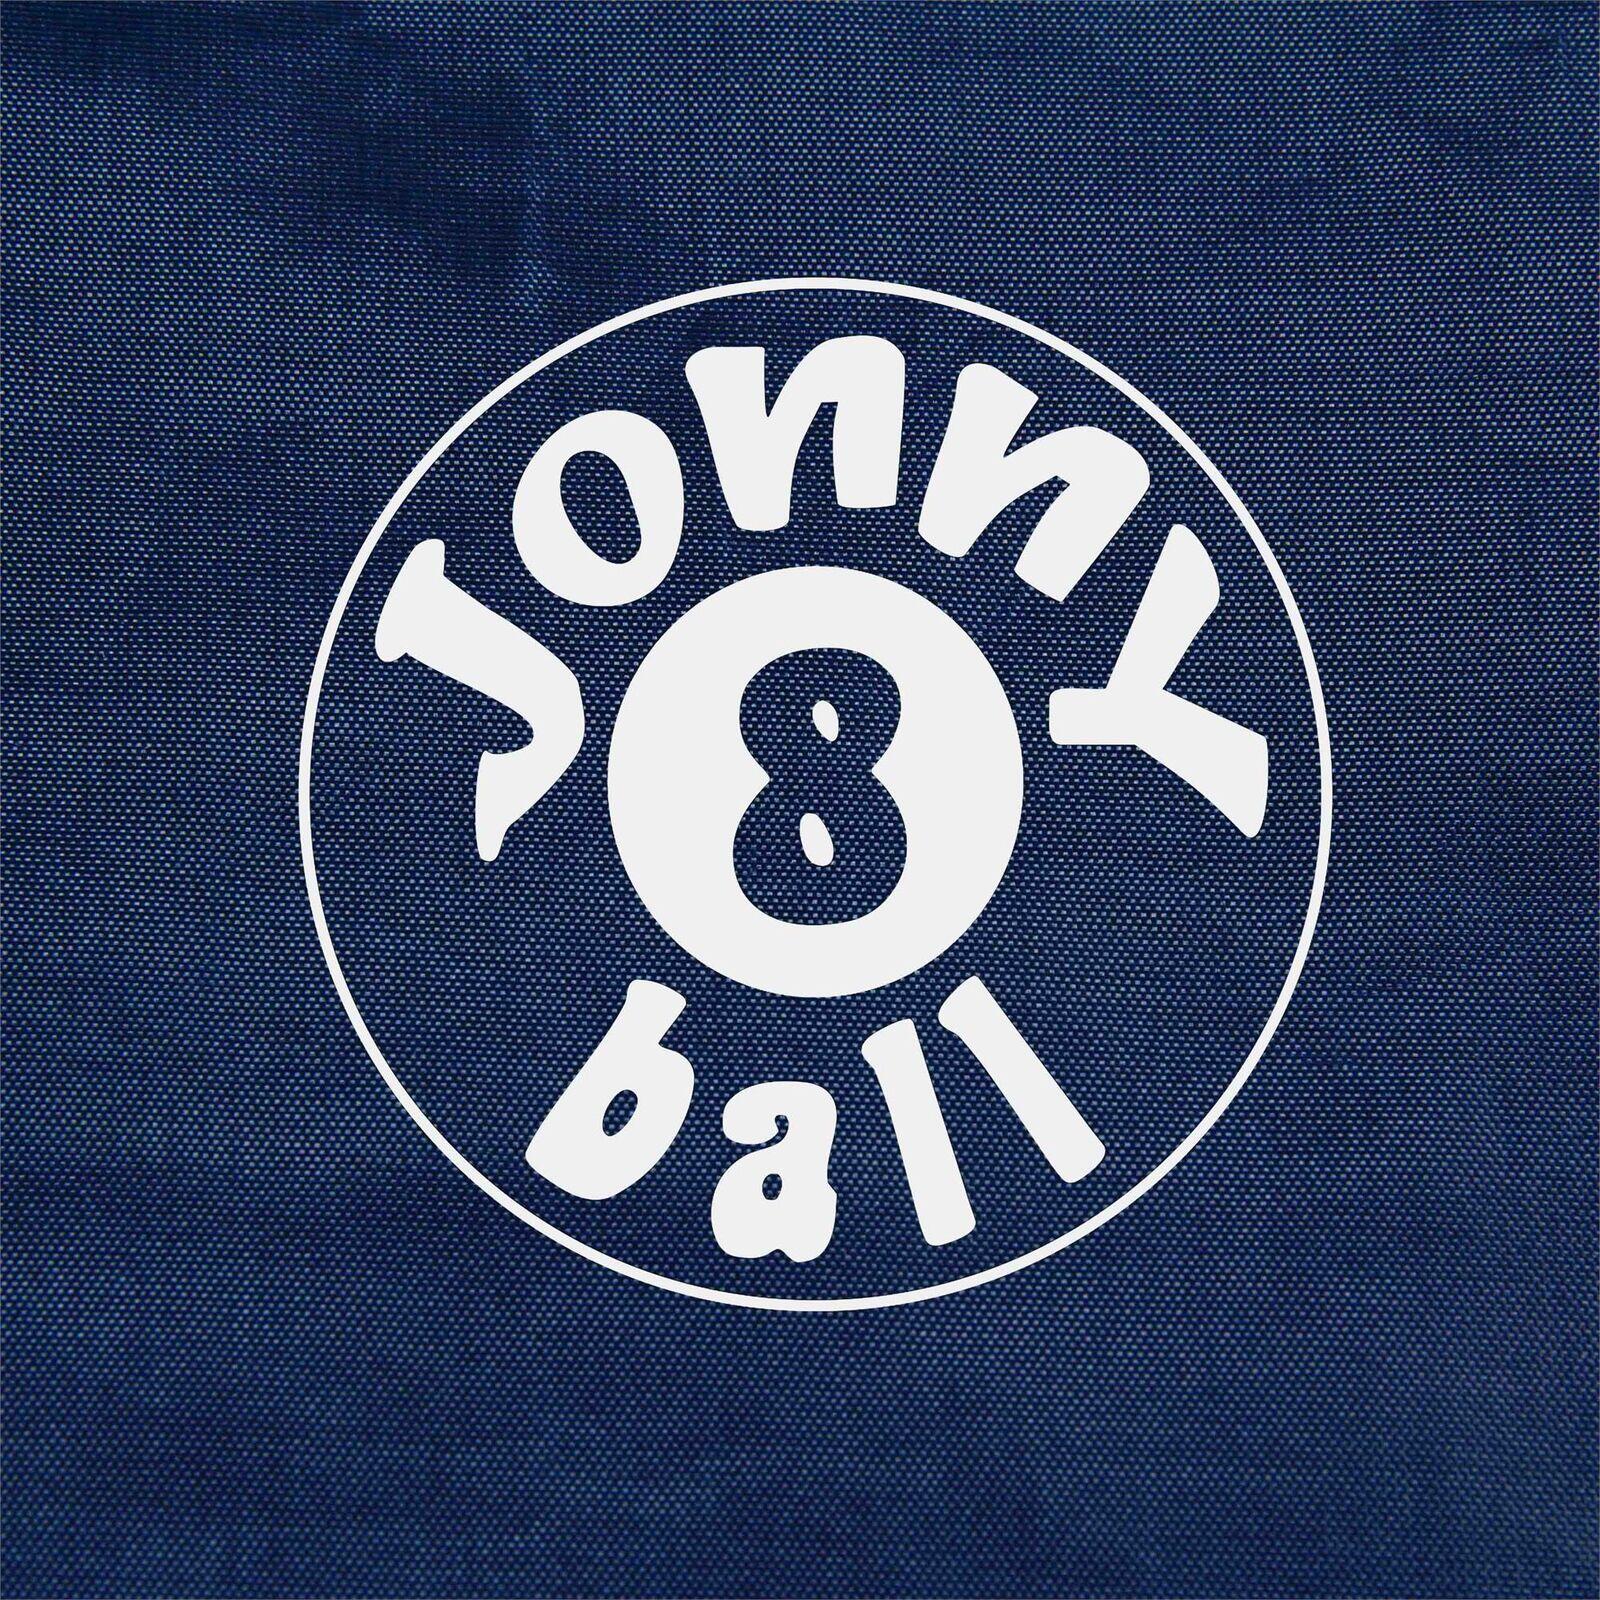 Jonny 8 Ball 6ft Fitted Nylon Snooker Pool Table Cover - DARK BLUE -192 x 115cm 2/3